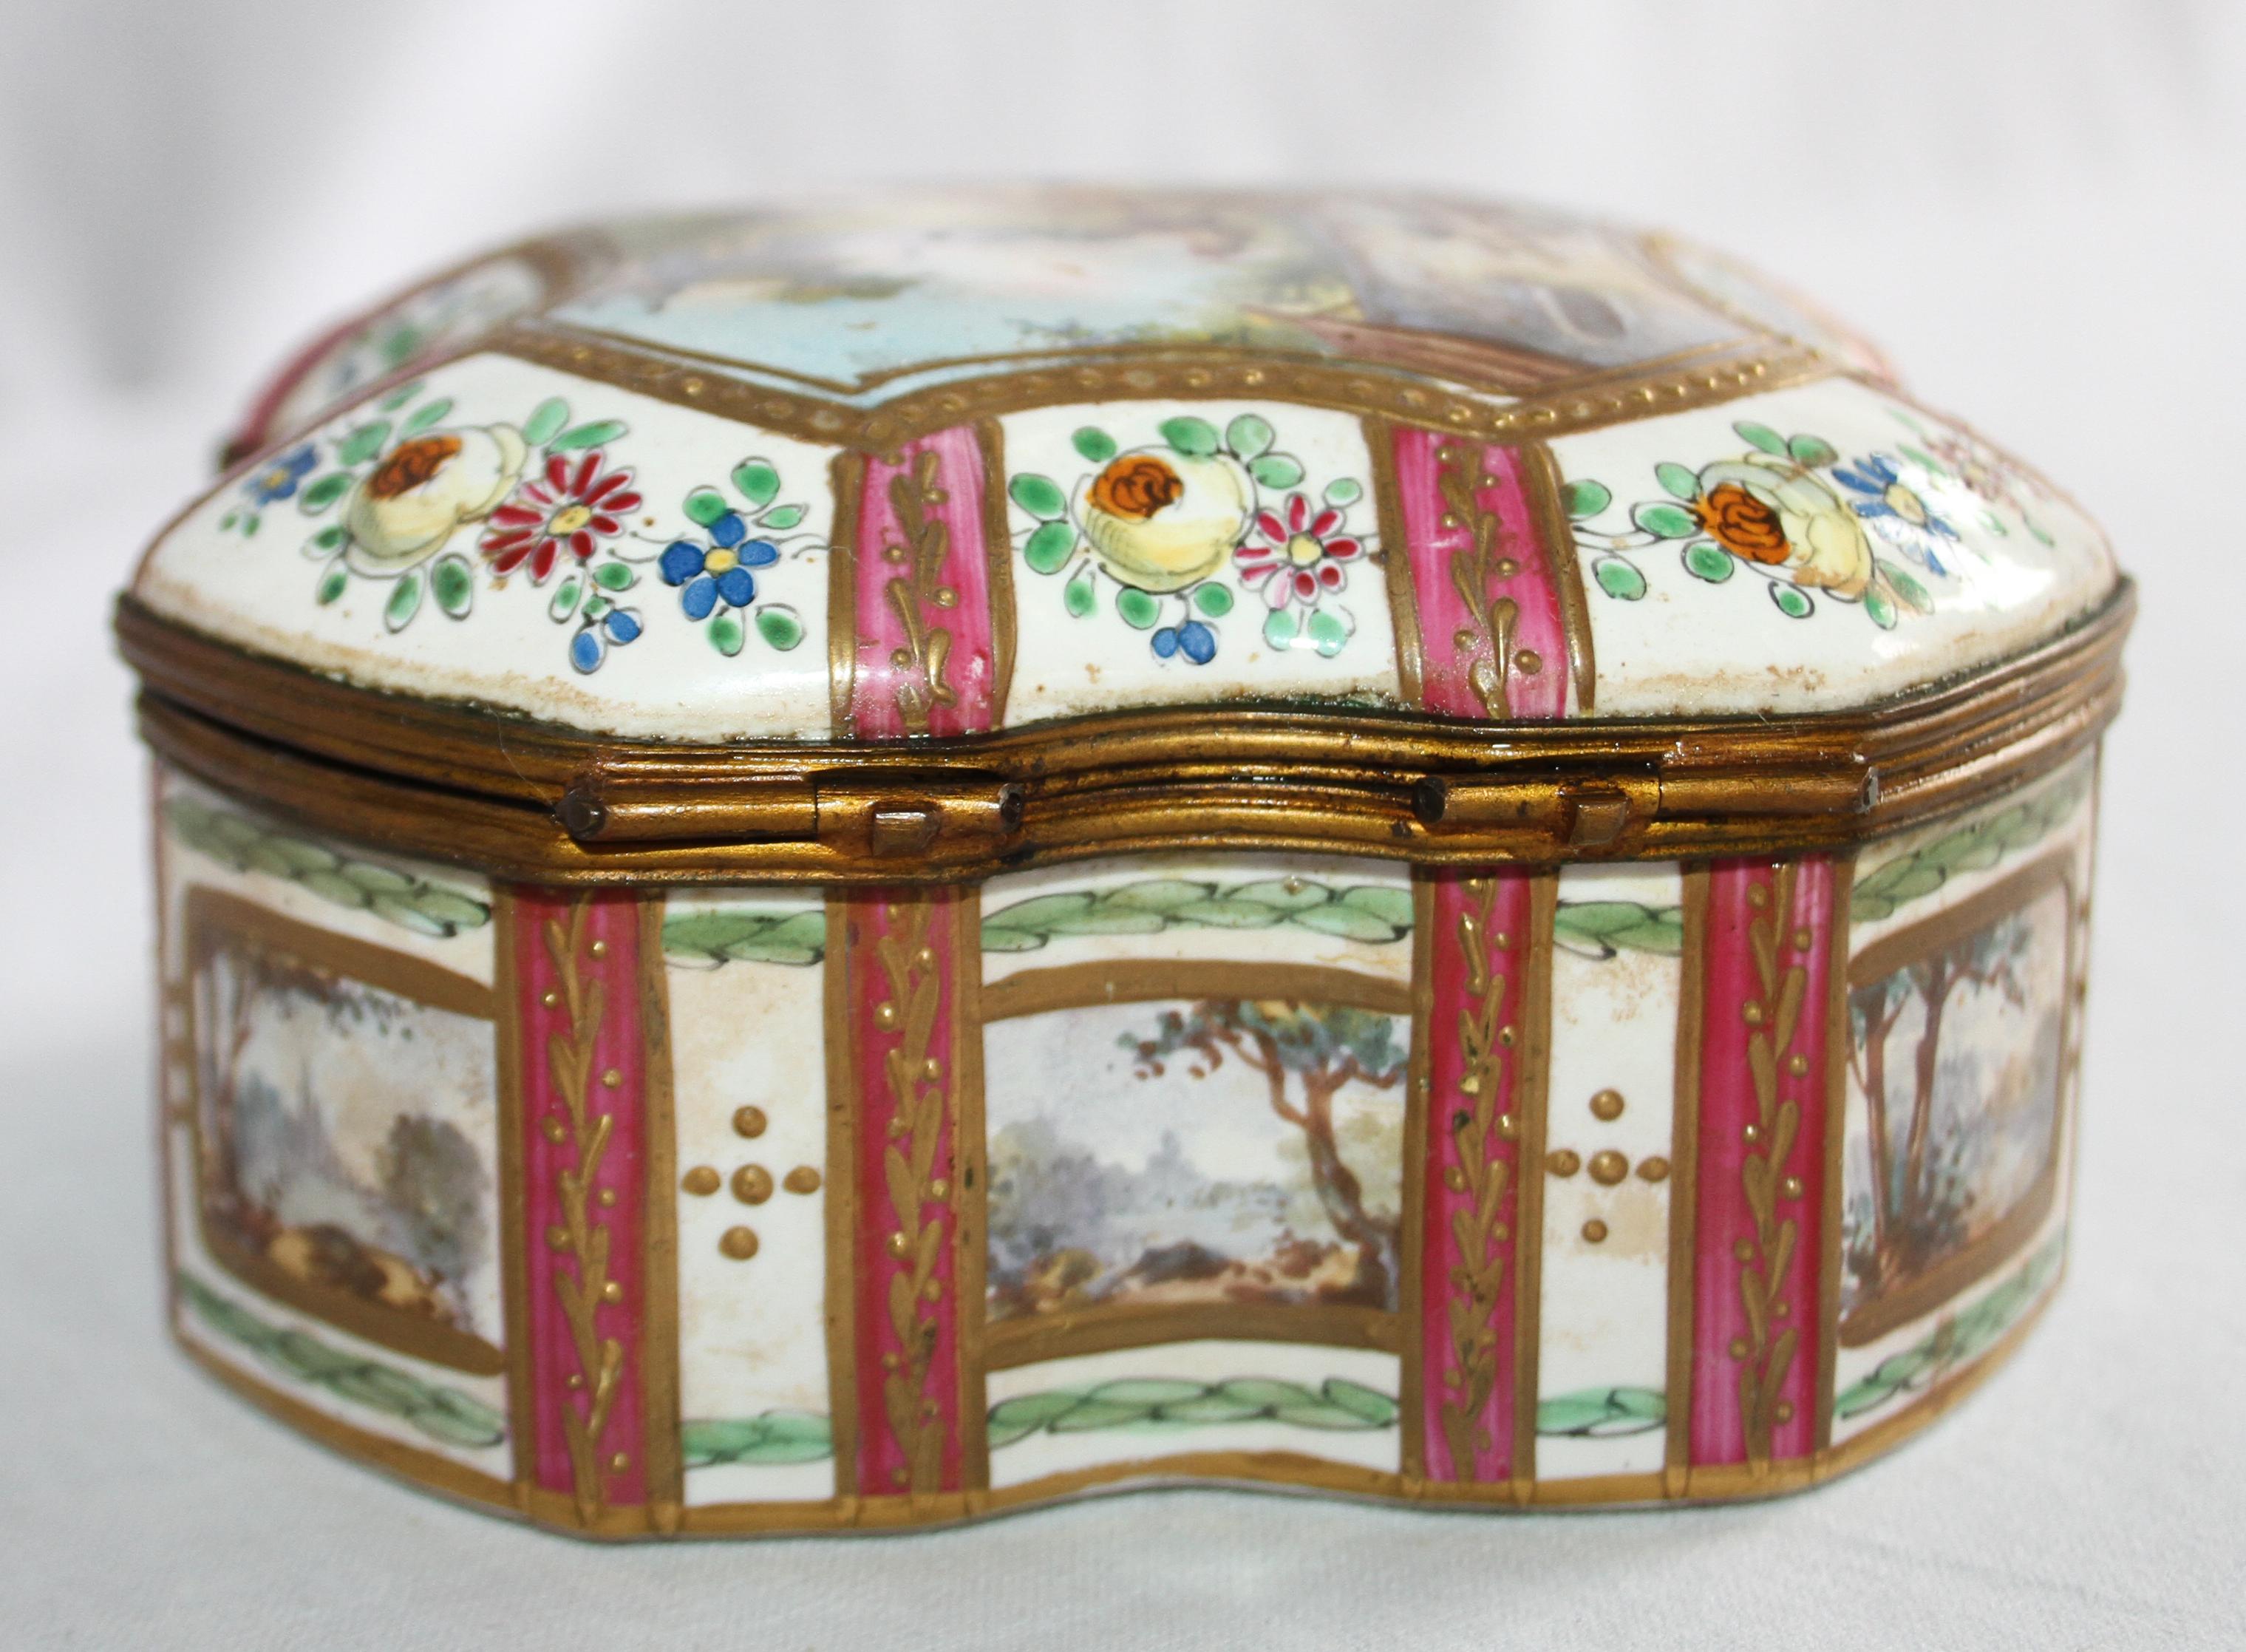 Hand-Painted 19th Century Porcelain Box Le Coq el le perle, Marked Sceaux